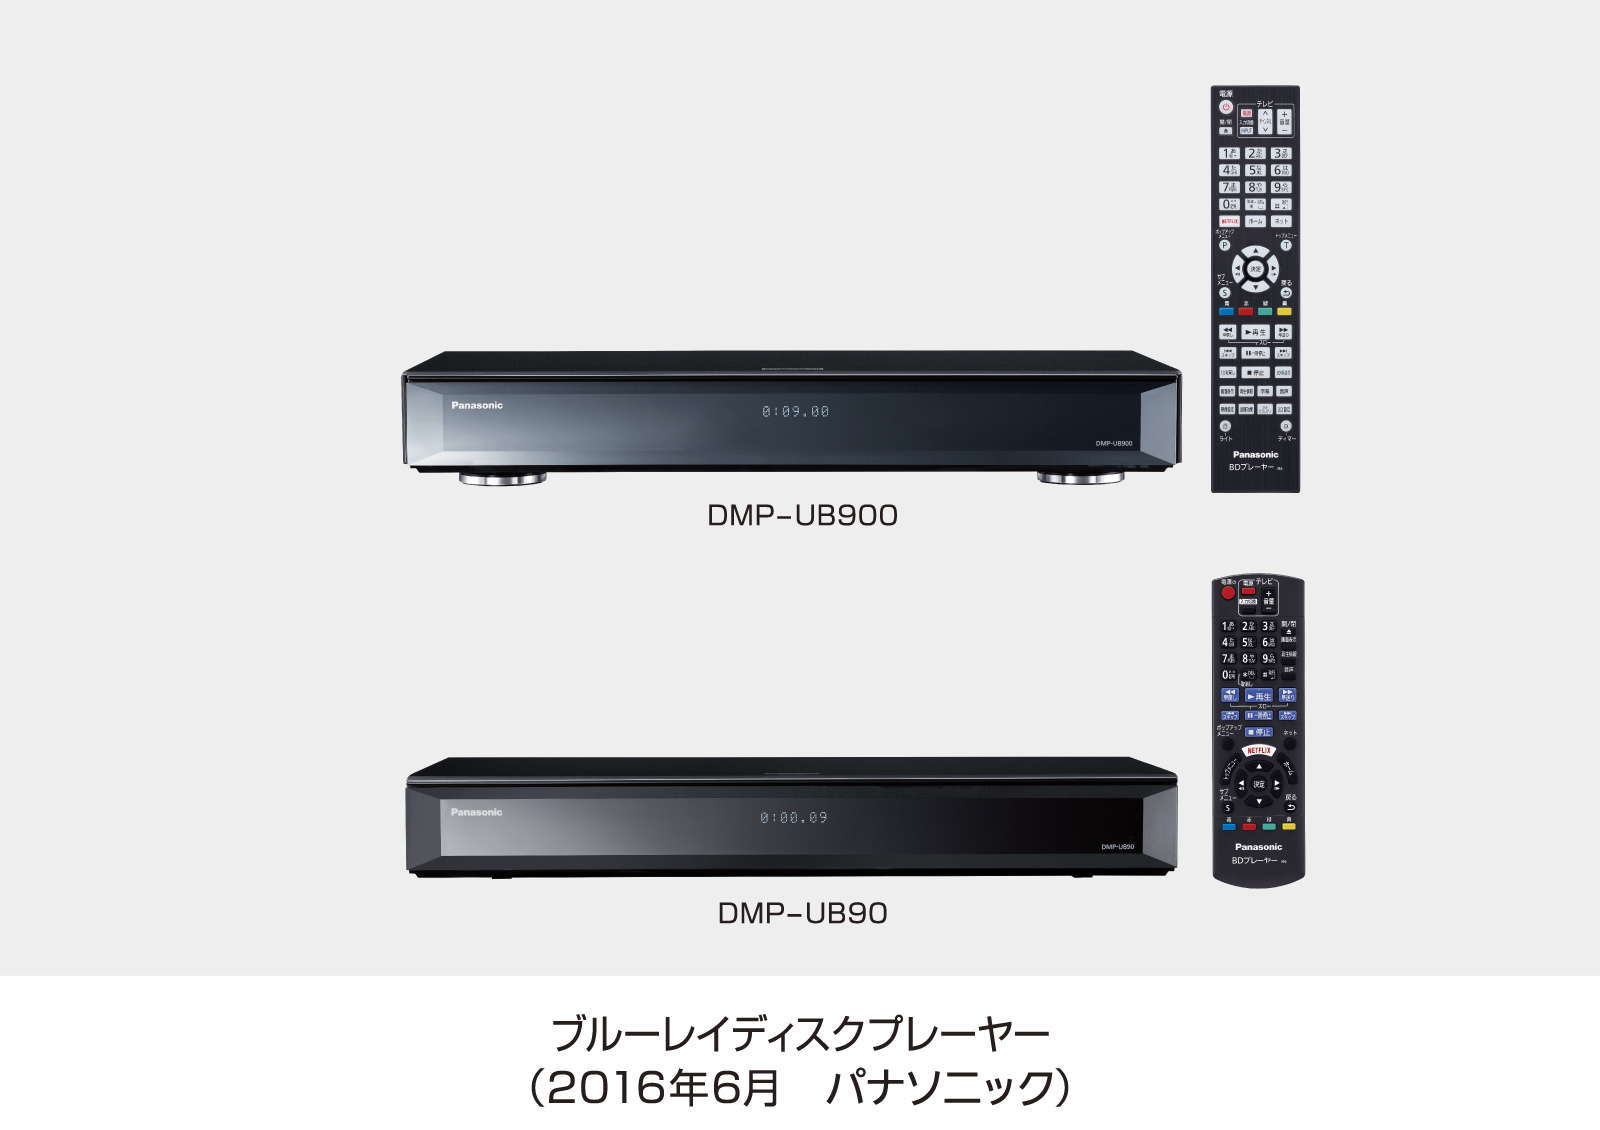 Ultra HD ブルーレイプレーヤー「DMP-UB900」「DMP-UB90」